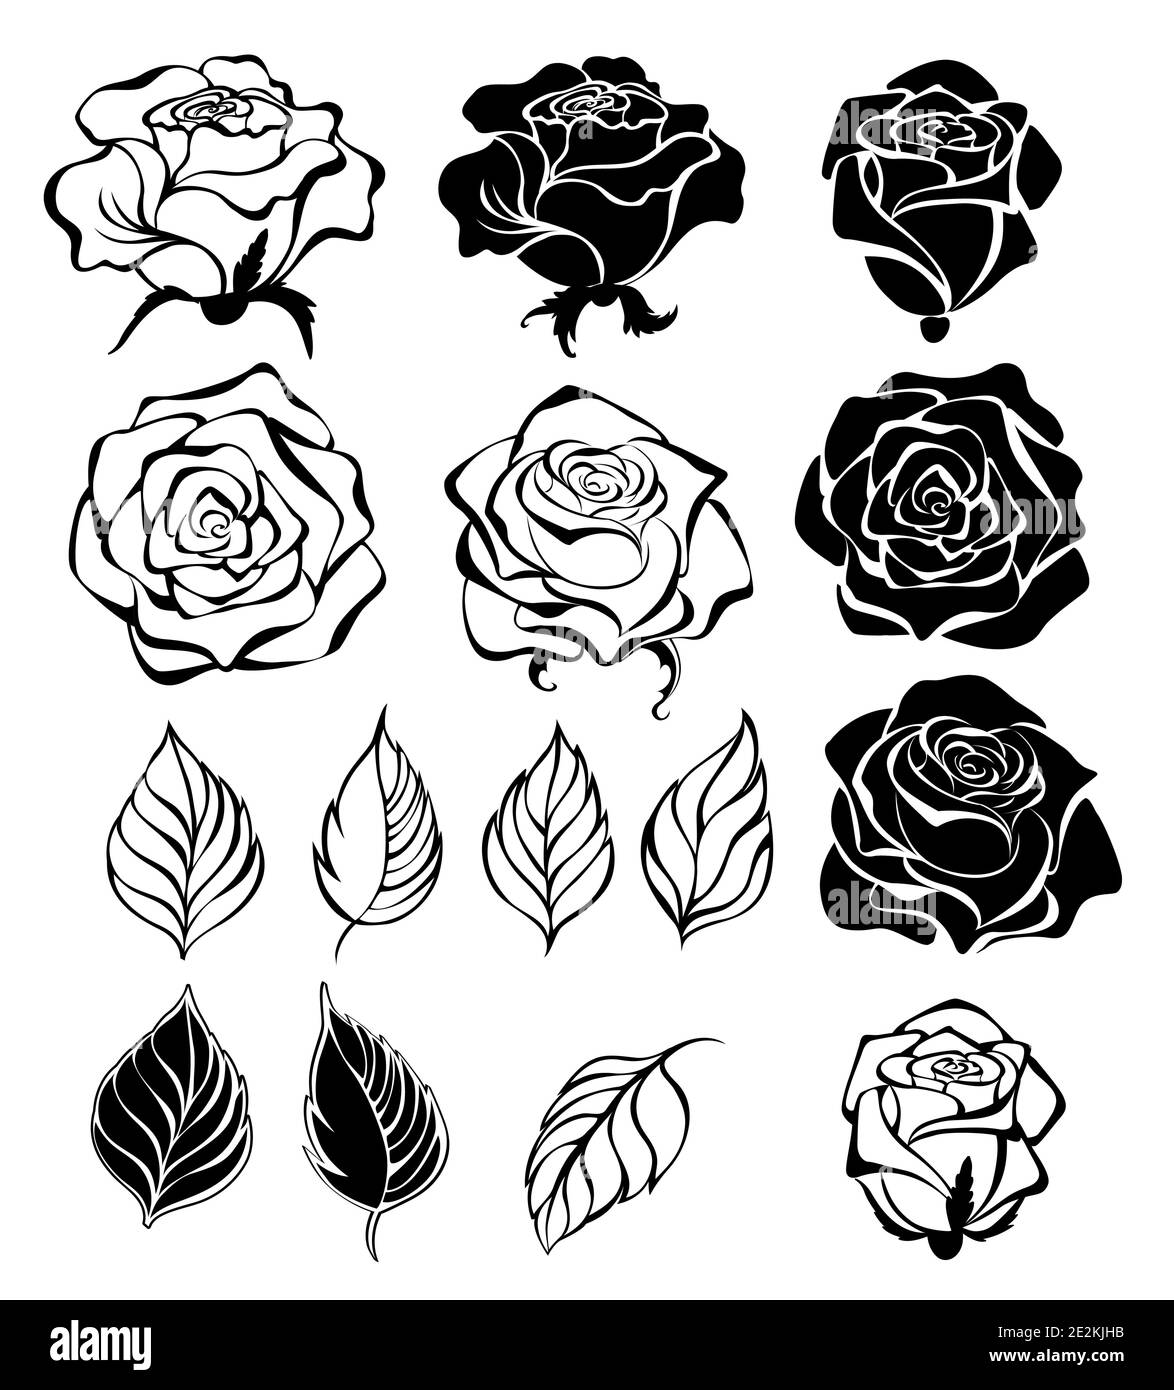 Set von Kontur, schwarz, Silhouette, kunstvoll gezeichnete Blumen, Knospen und Blätter von Rosen, auf weißem Hintergrund. Stock Vektor